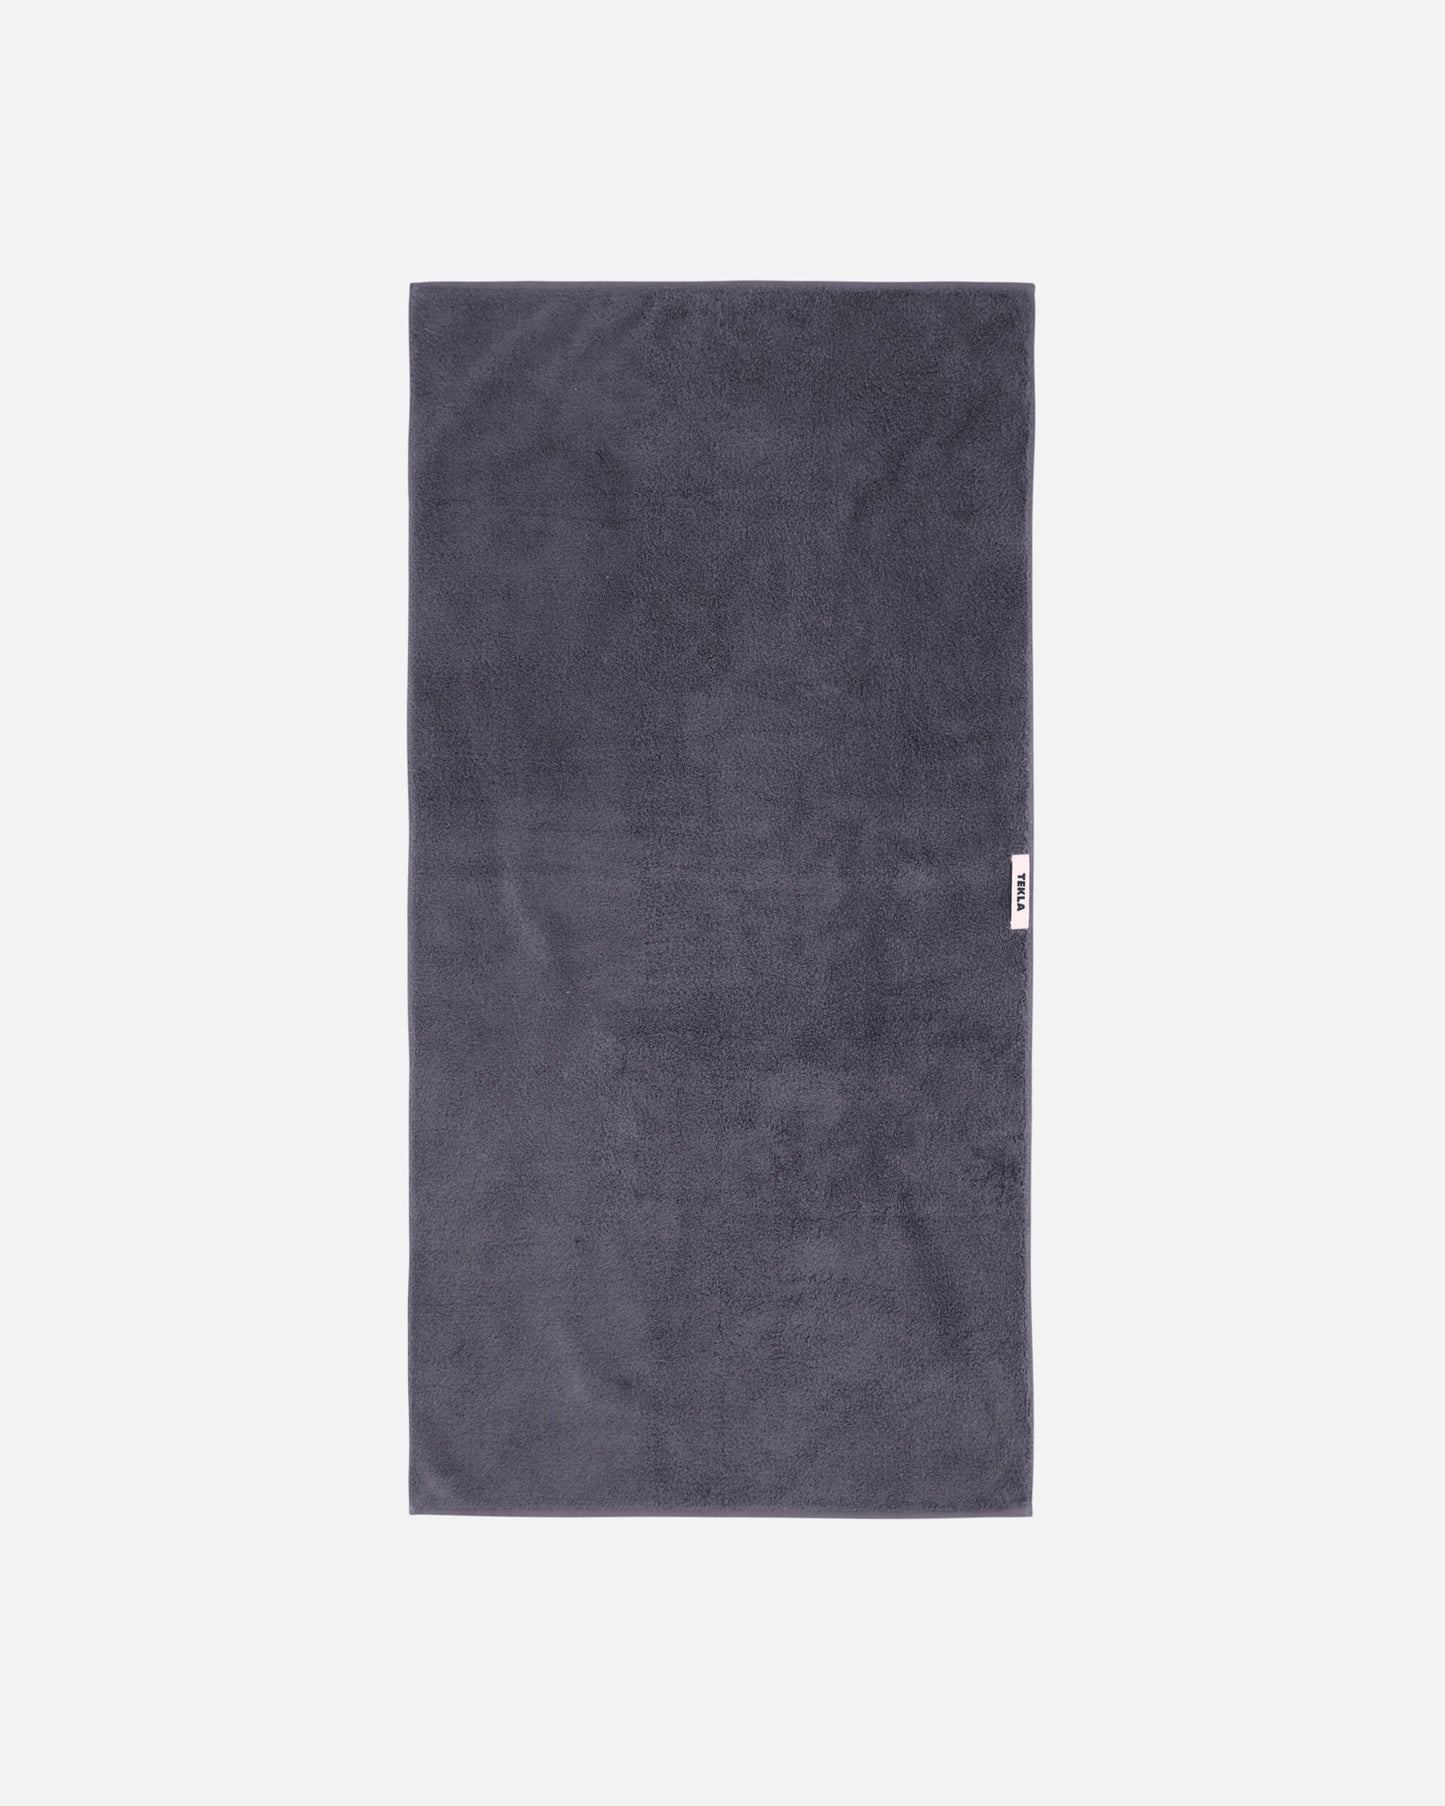 Tekla Terry Towel - Solid 70X140 Charcoal Grey Textile Bath Towels TT-70x140 CG